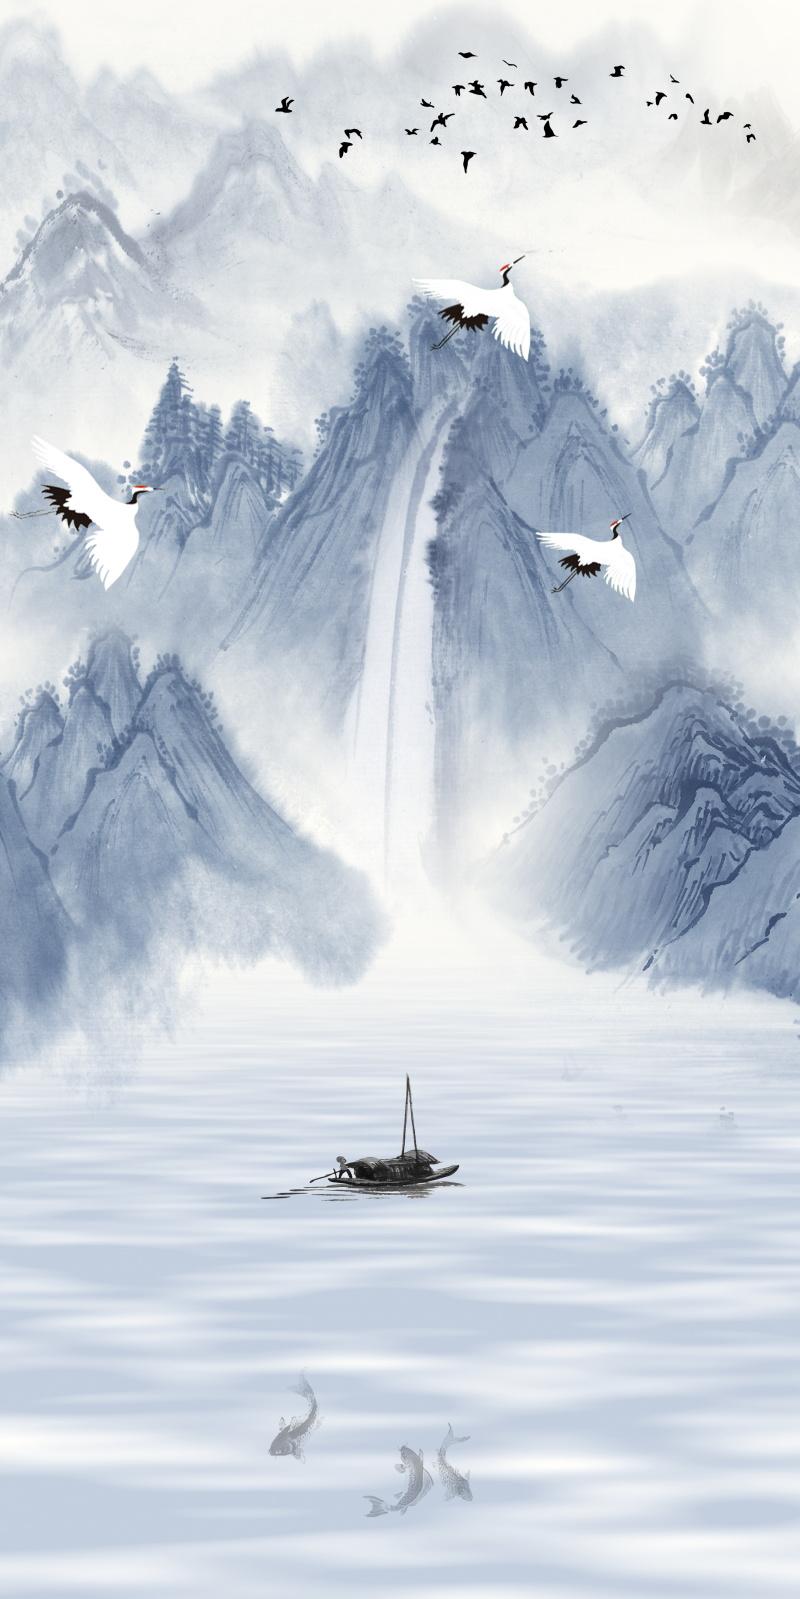 中国风水墨古典山水画素材分享,可做手机屏保,古风插画背景素材